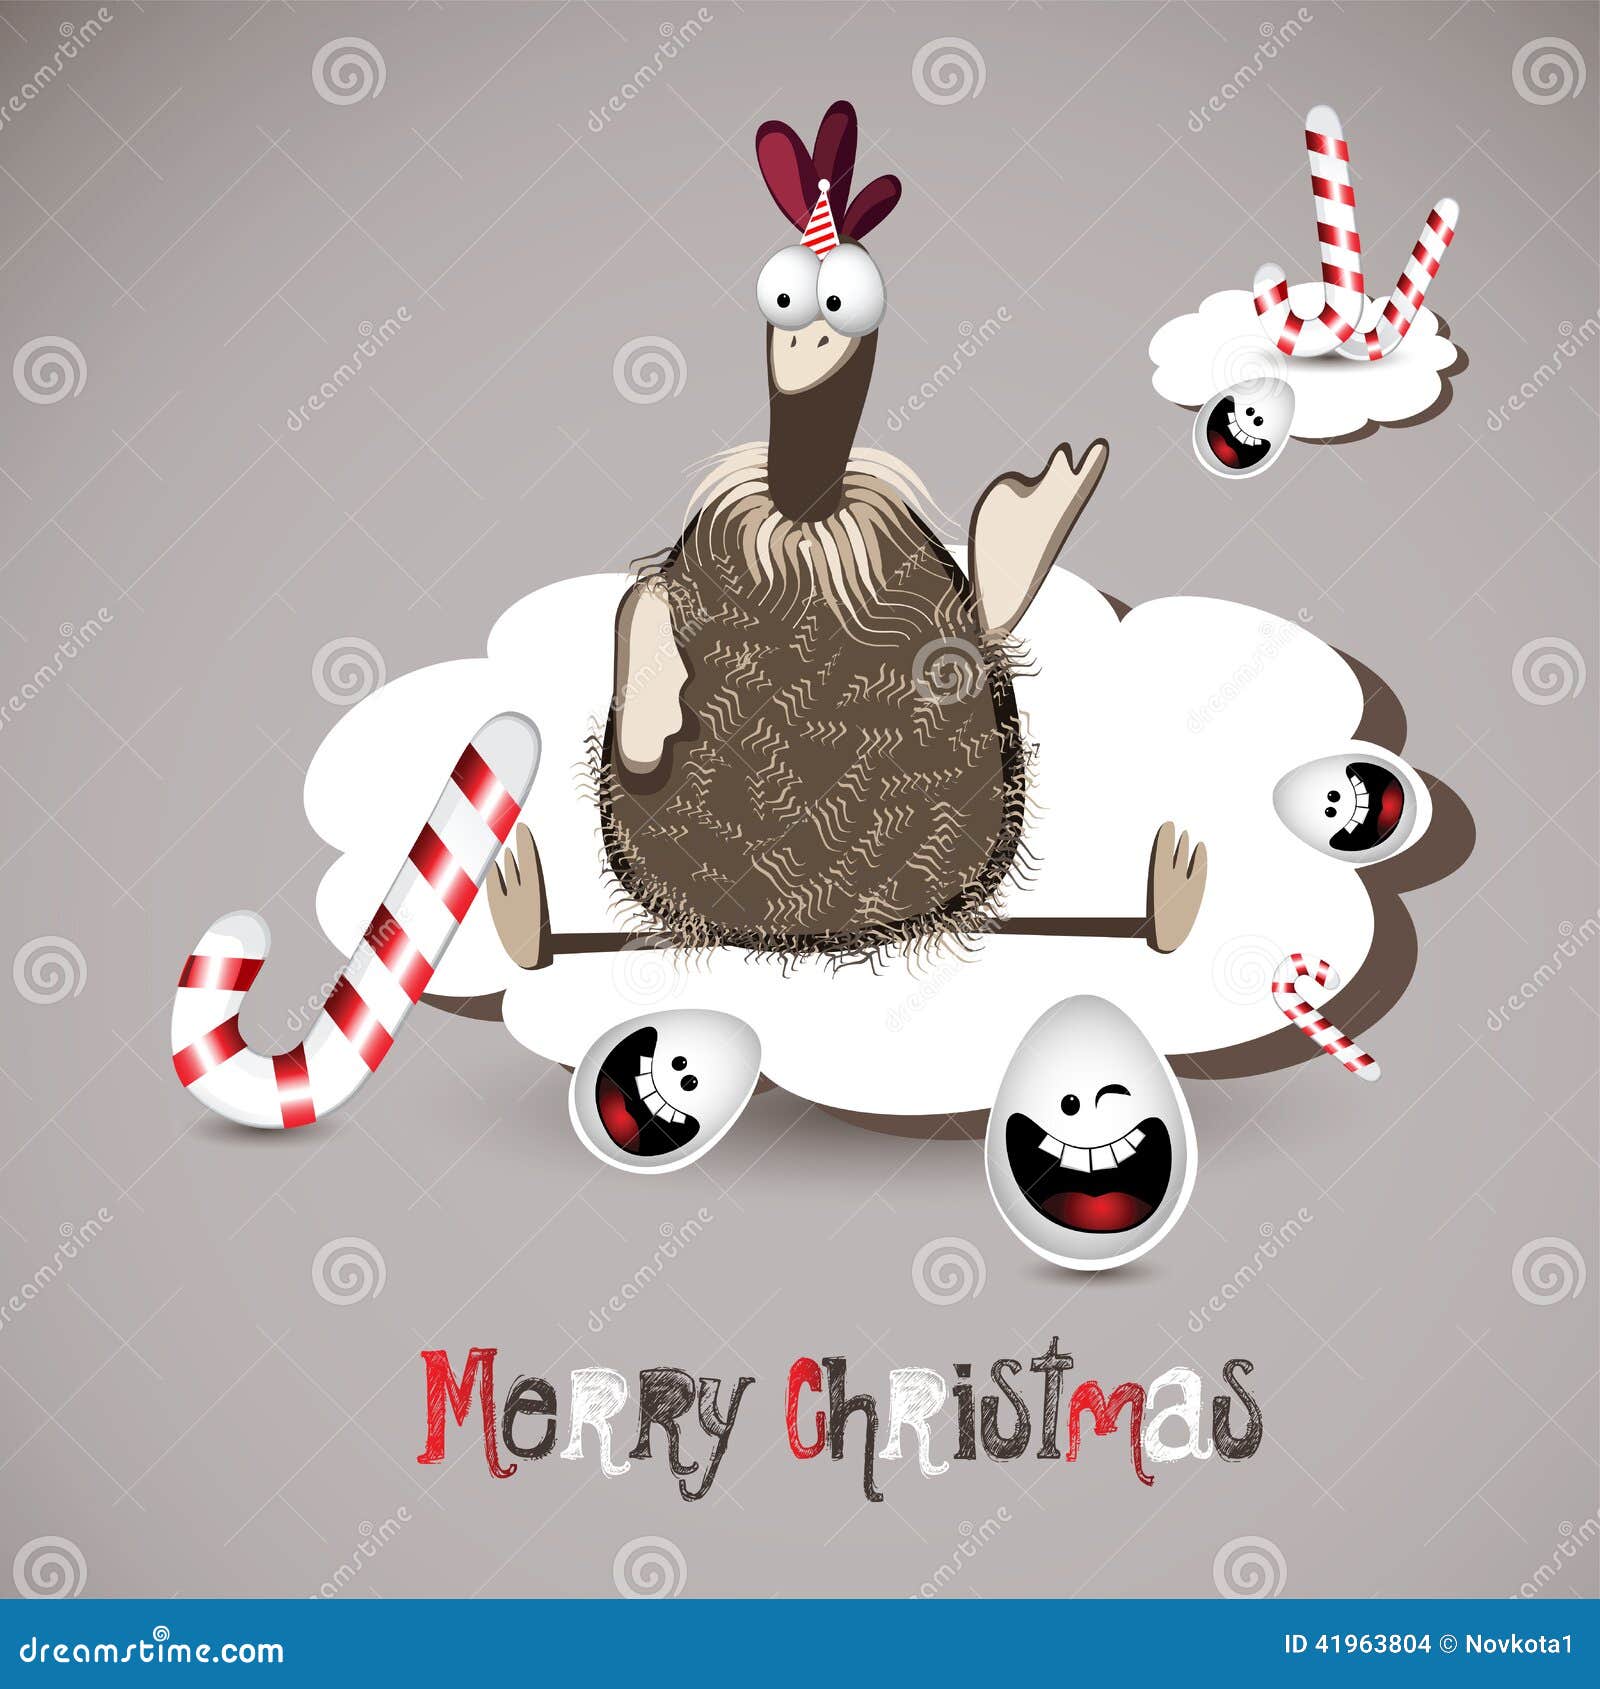 Merry Christmas Chicken And Egg Stock Photography | CartoonDealer.com ...